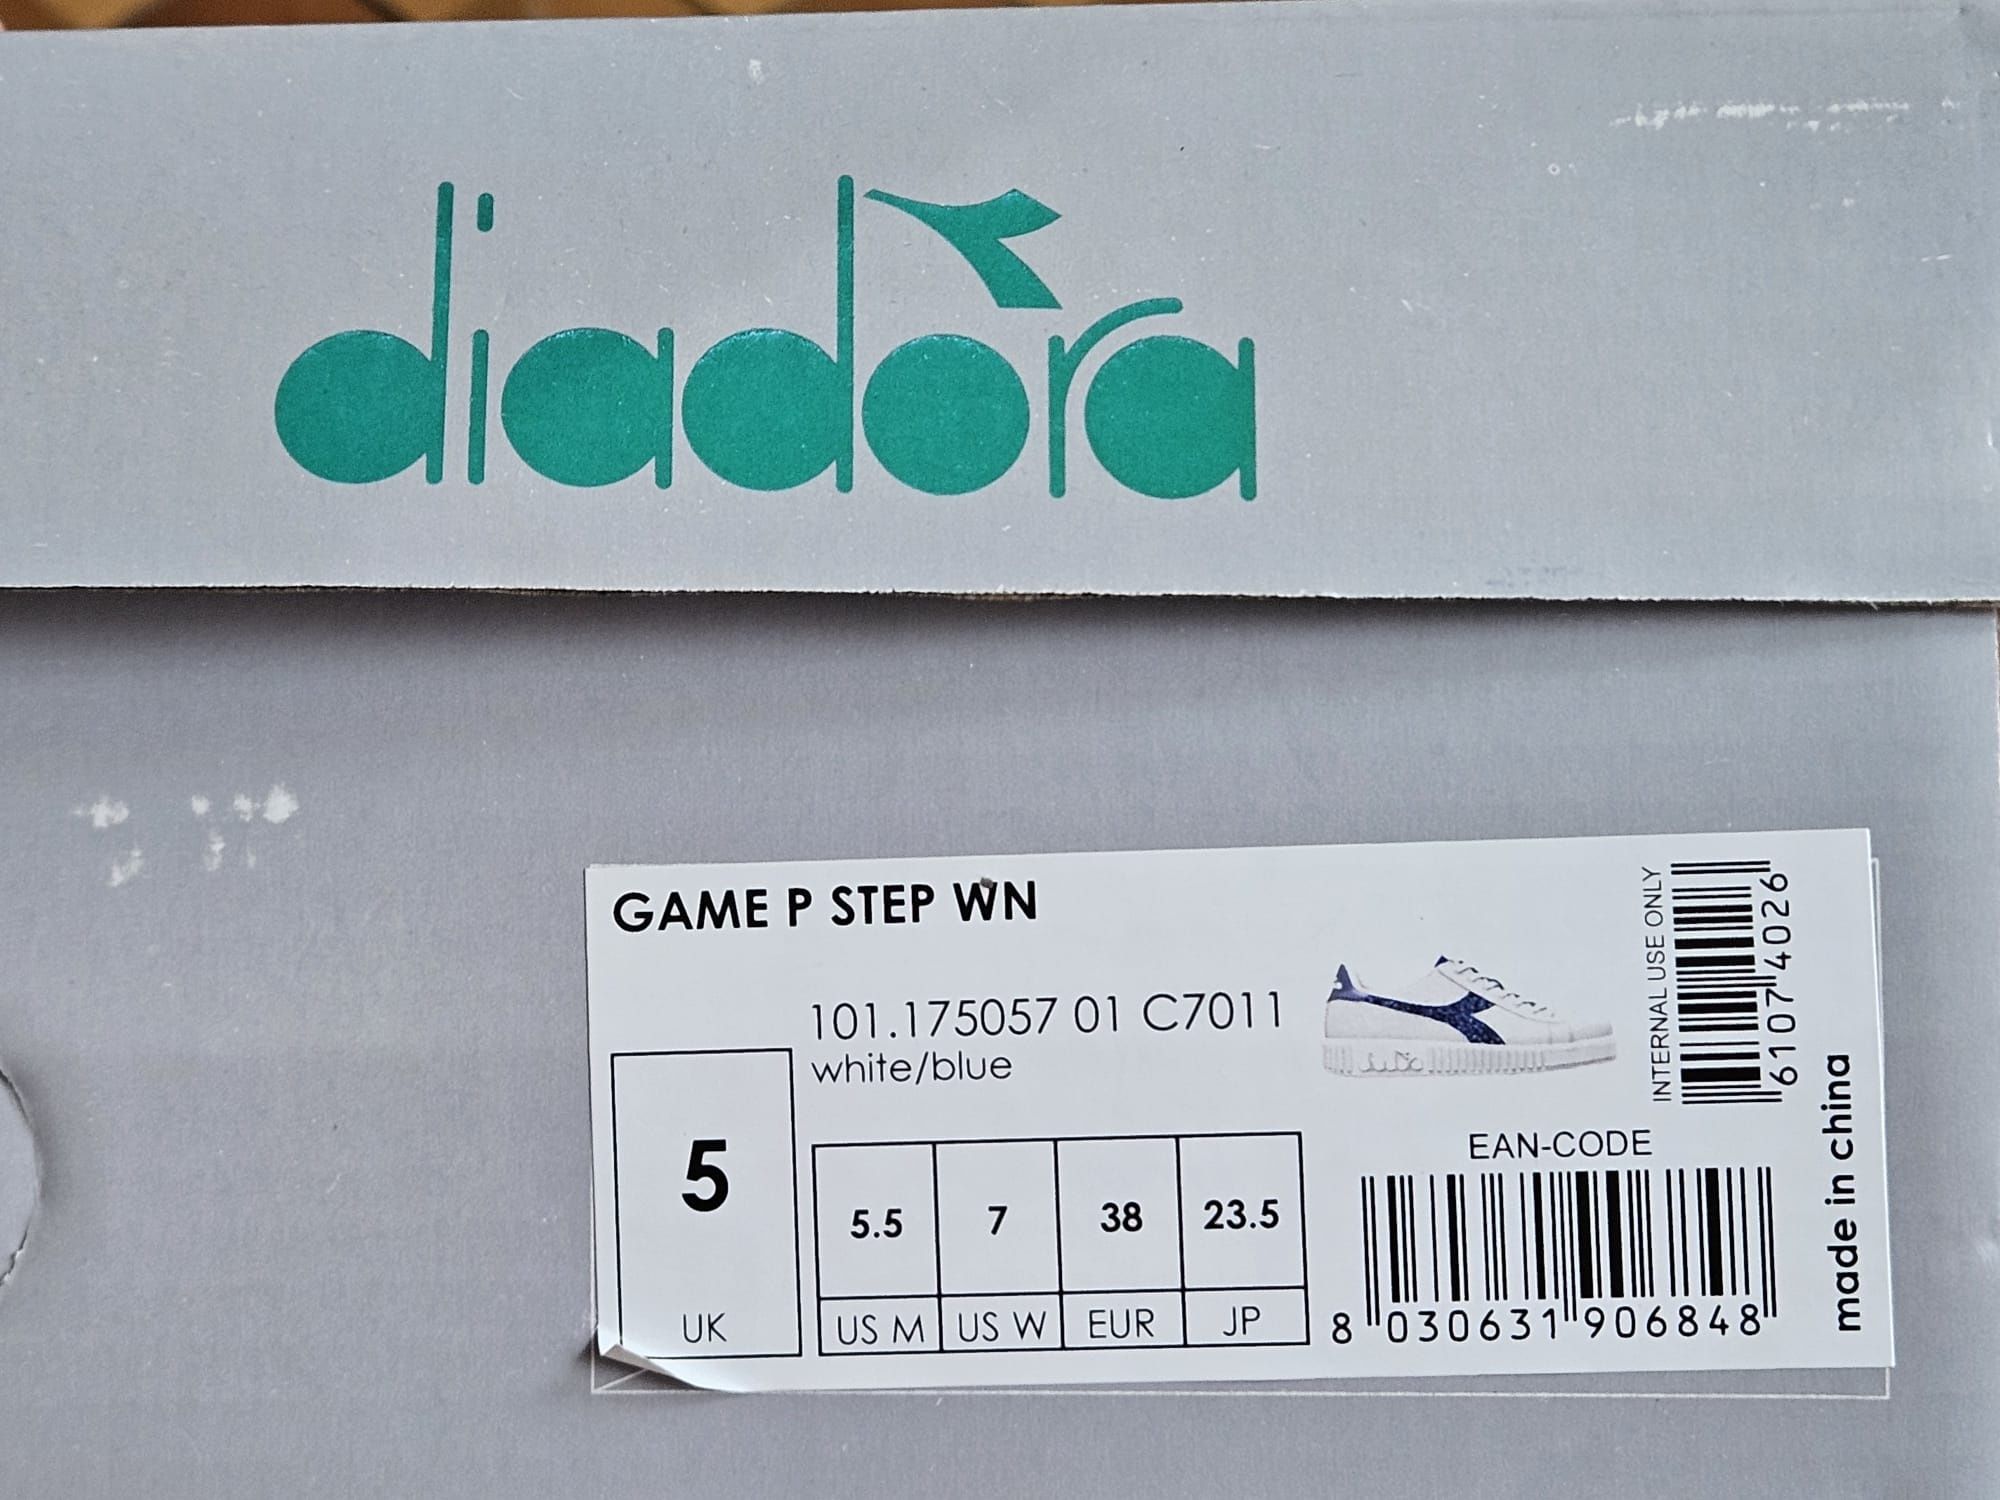 Sneakers Diadora